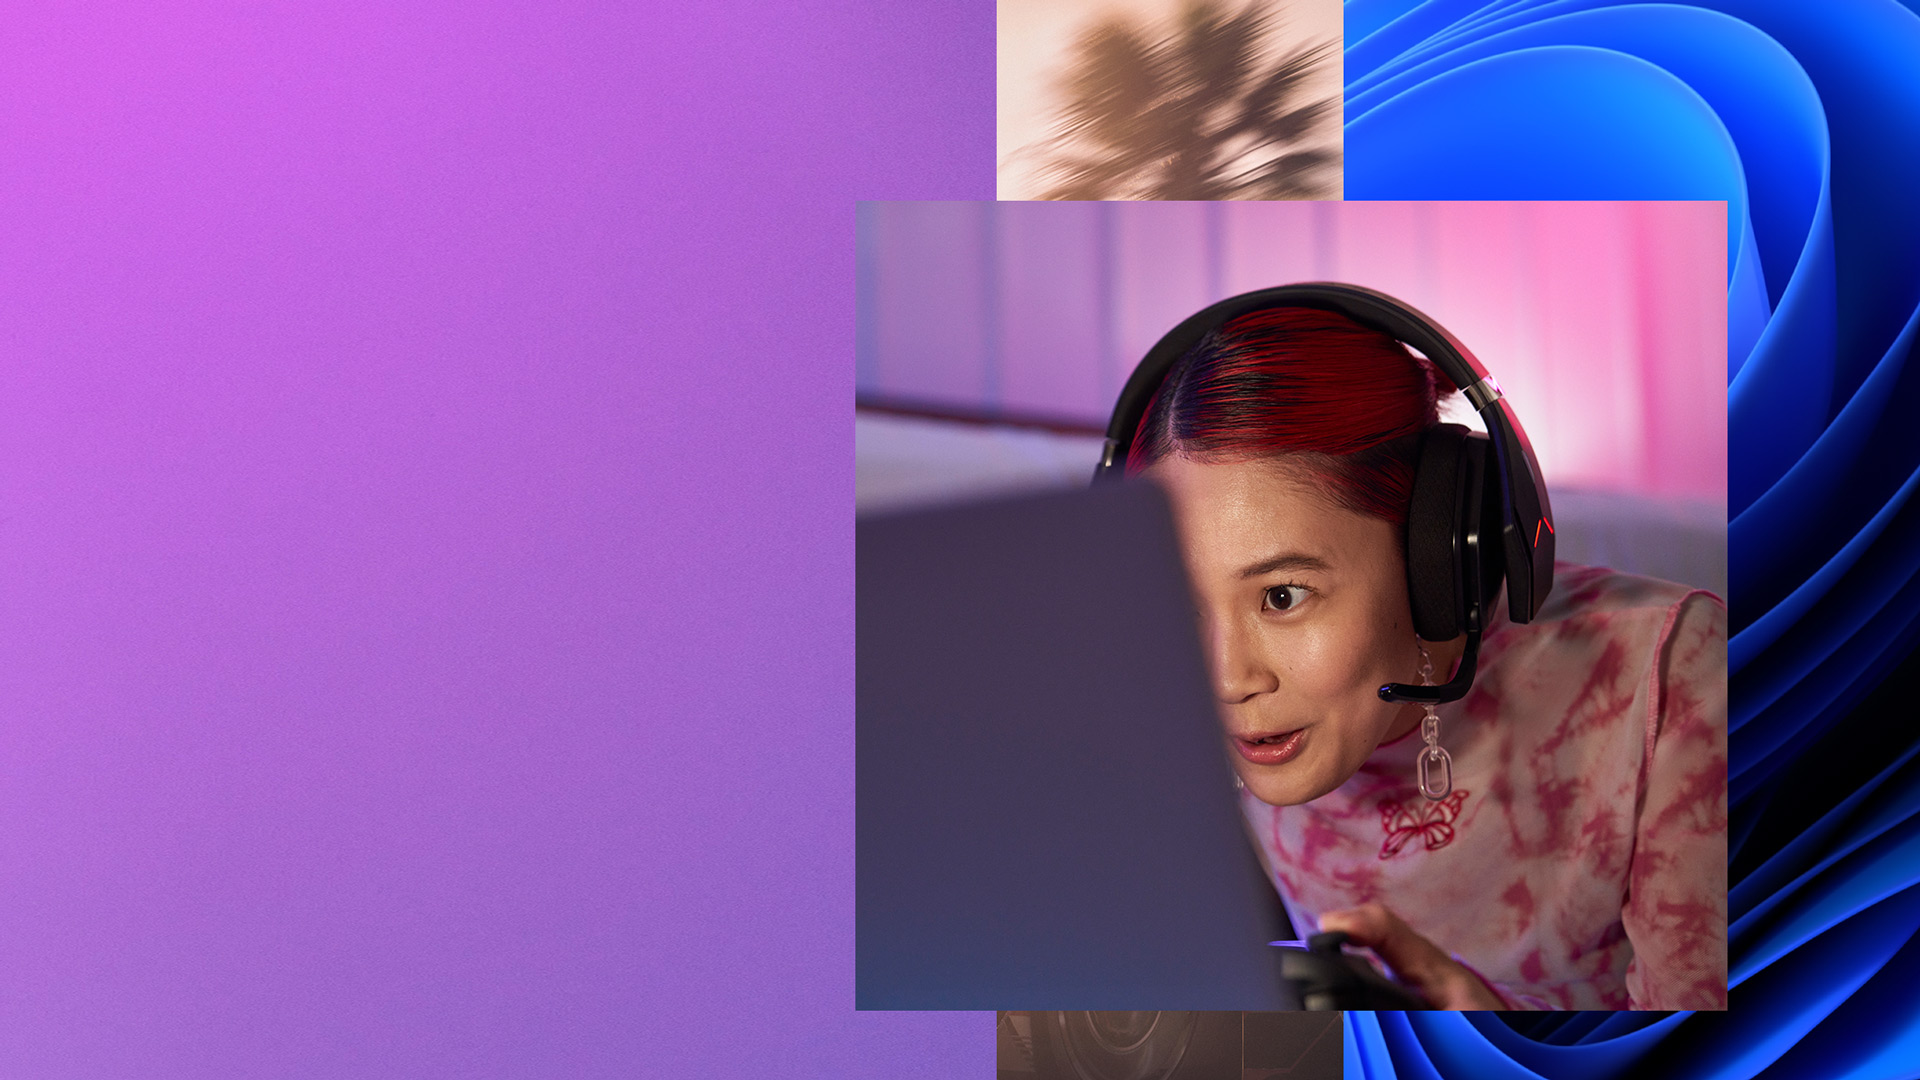 เด็กผู้หญิงคนหนึ่งที่สวมหูฟังและถือคอนโทรลเลอร์ไว้ในมือกำลังมองหน้าจอคอมพิวเตอร์